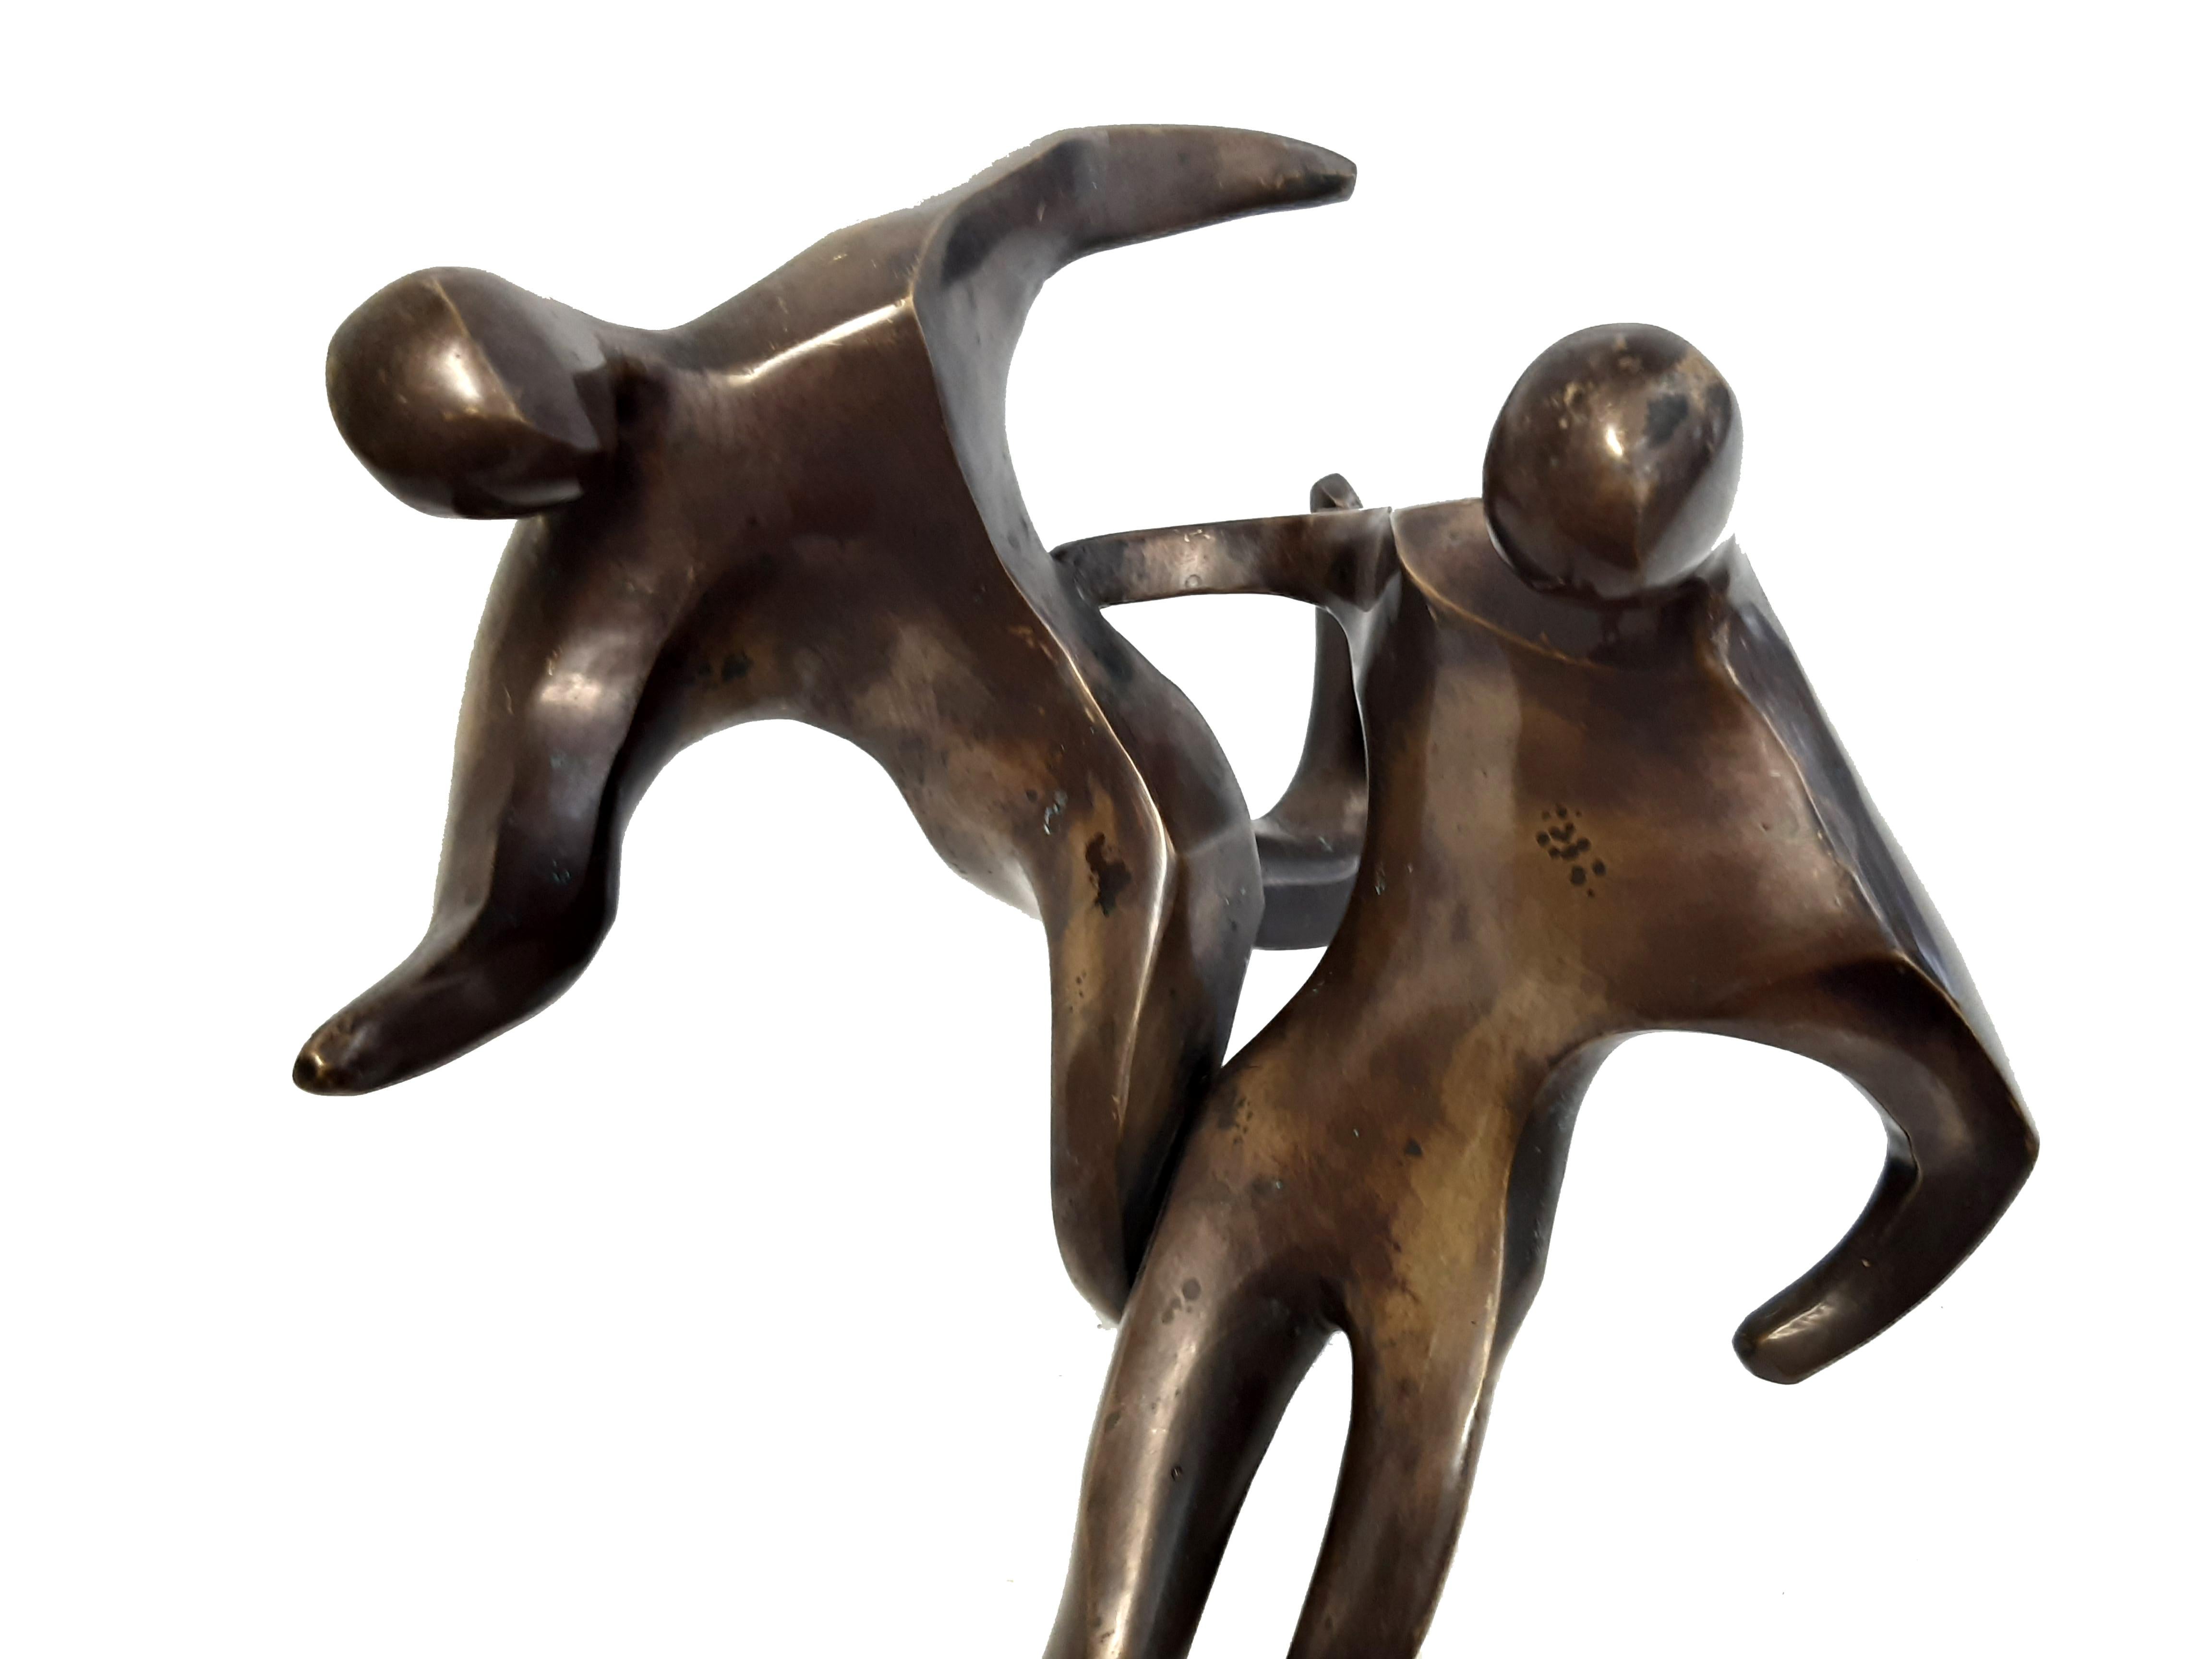 Sculpture en bronze de l'époque des 50 ans, avec 2 joueurs de football, qui se battent pour un ballon. Remarquable description dynamique de l'évolution de la forme des obligations à moyen terme.

La figure a été montée sur une plaque d'appui, mais